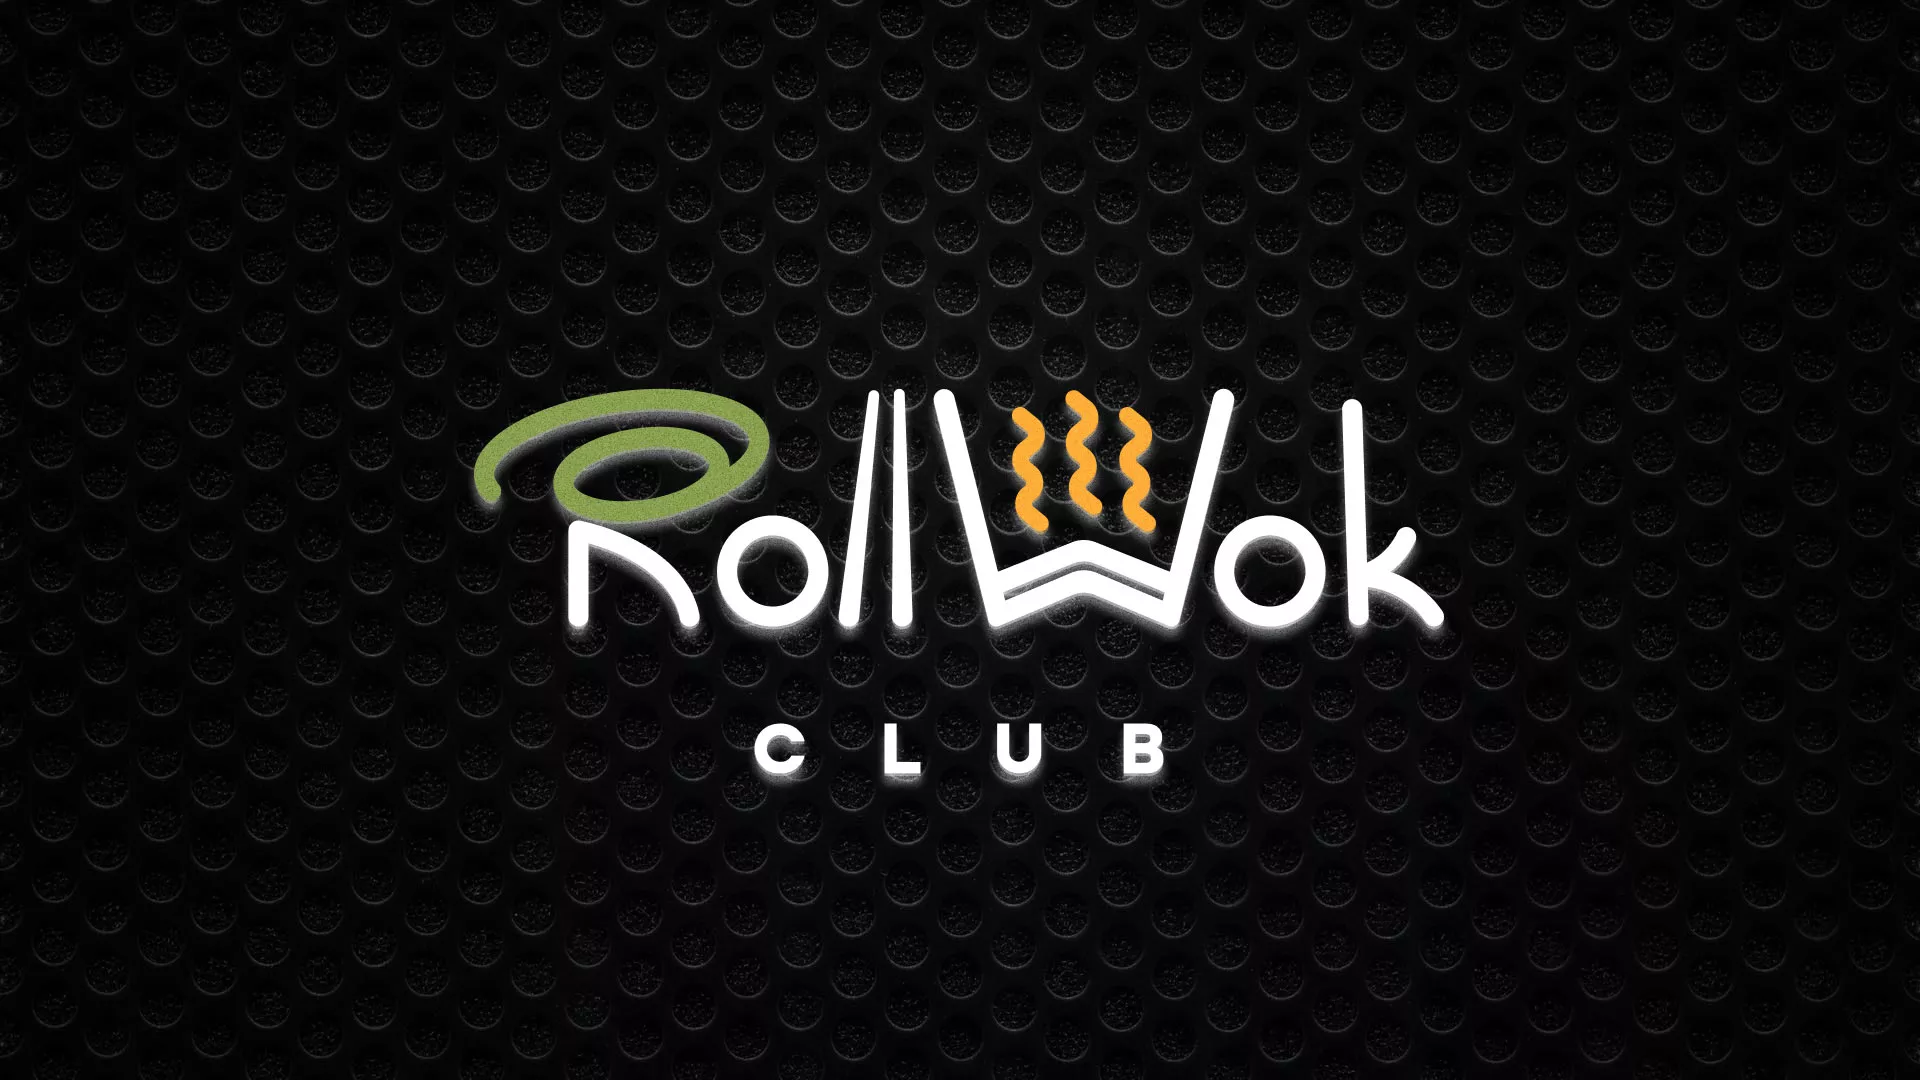 Брендирование торговых точек суши-бара «Roll Wok Club» в Боброве